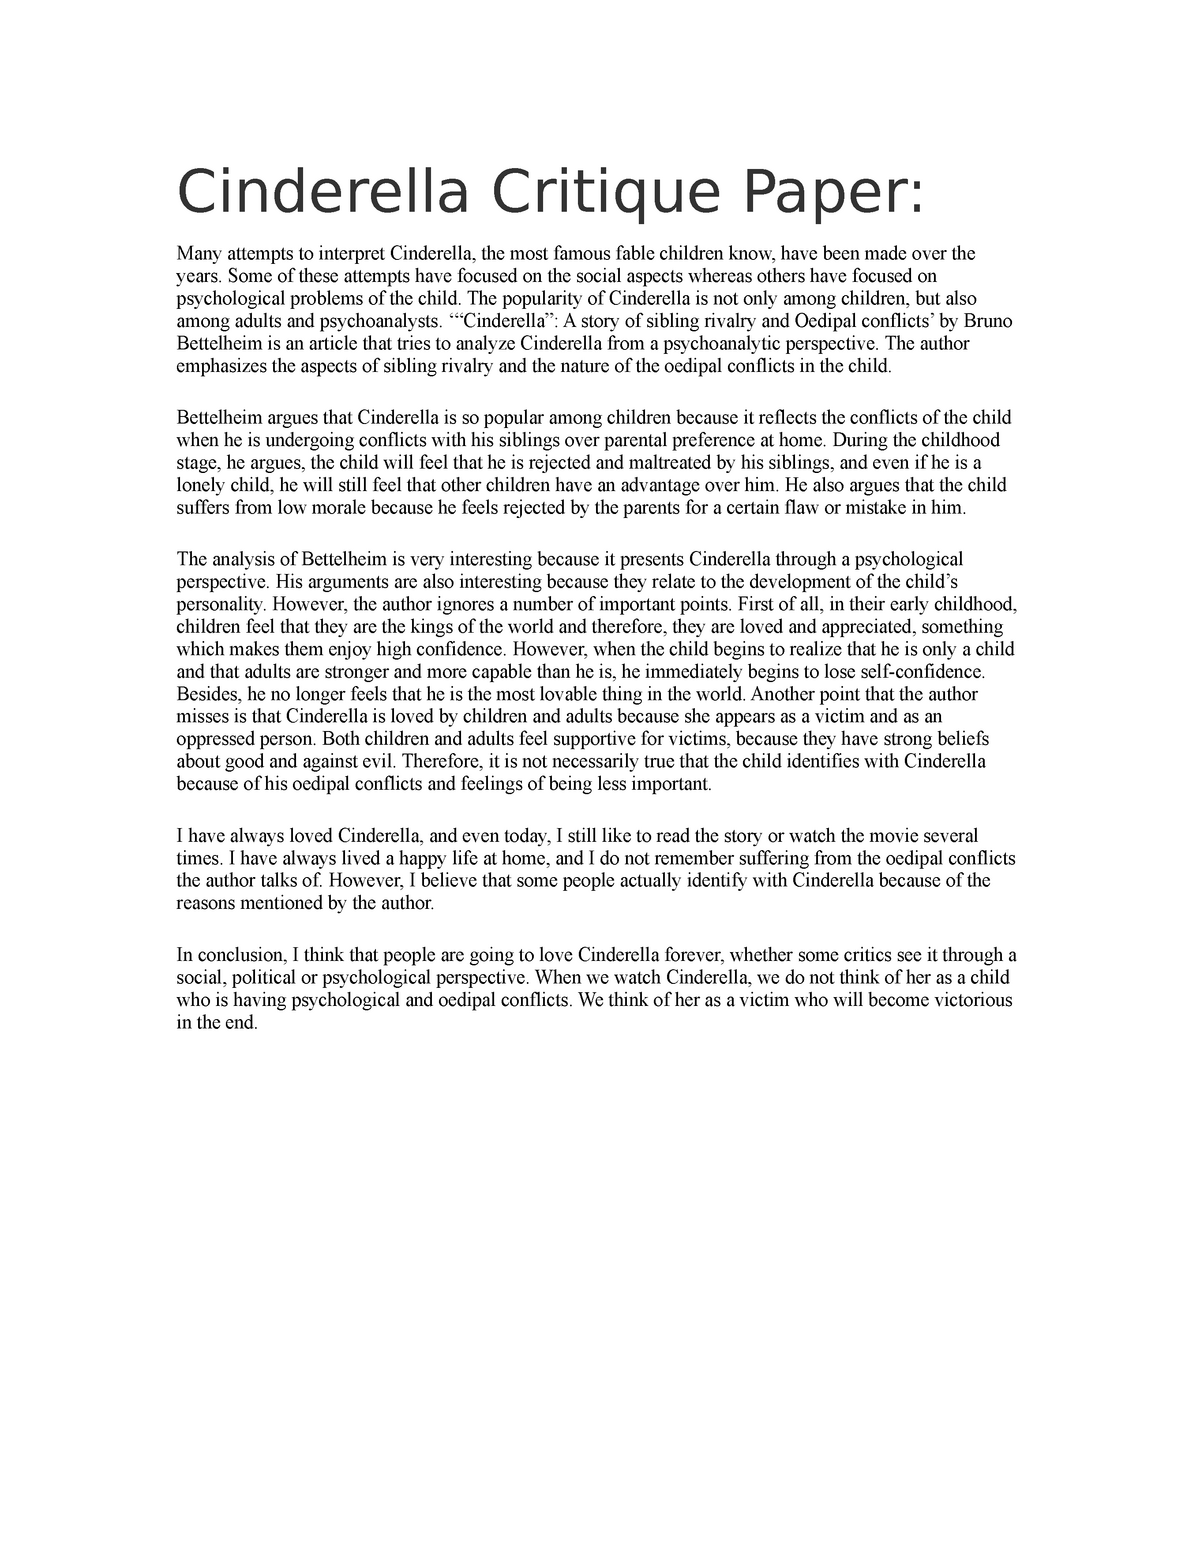 cinderella story in essay